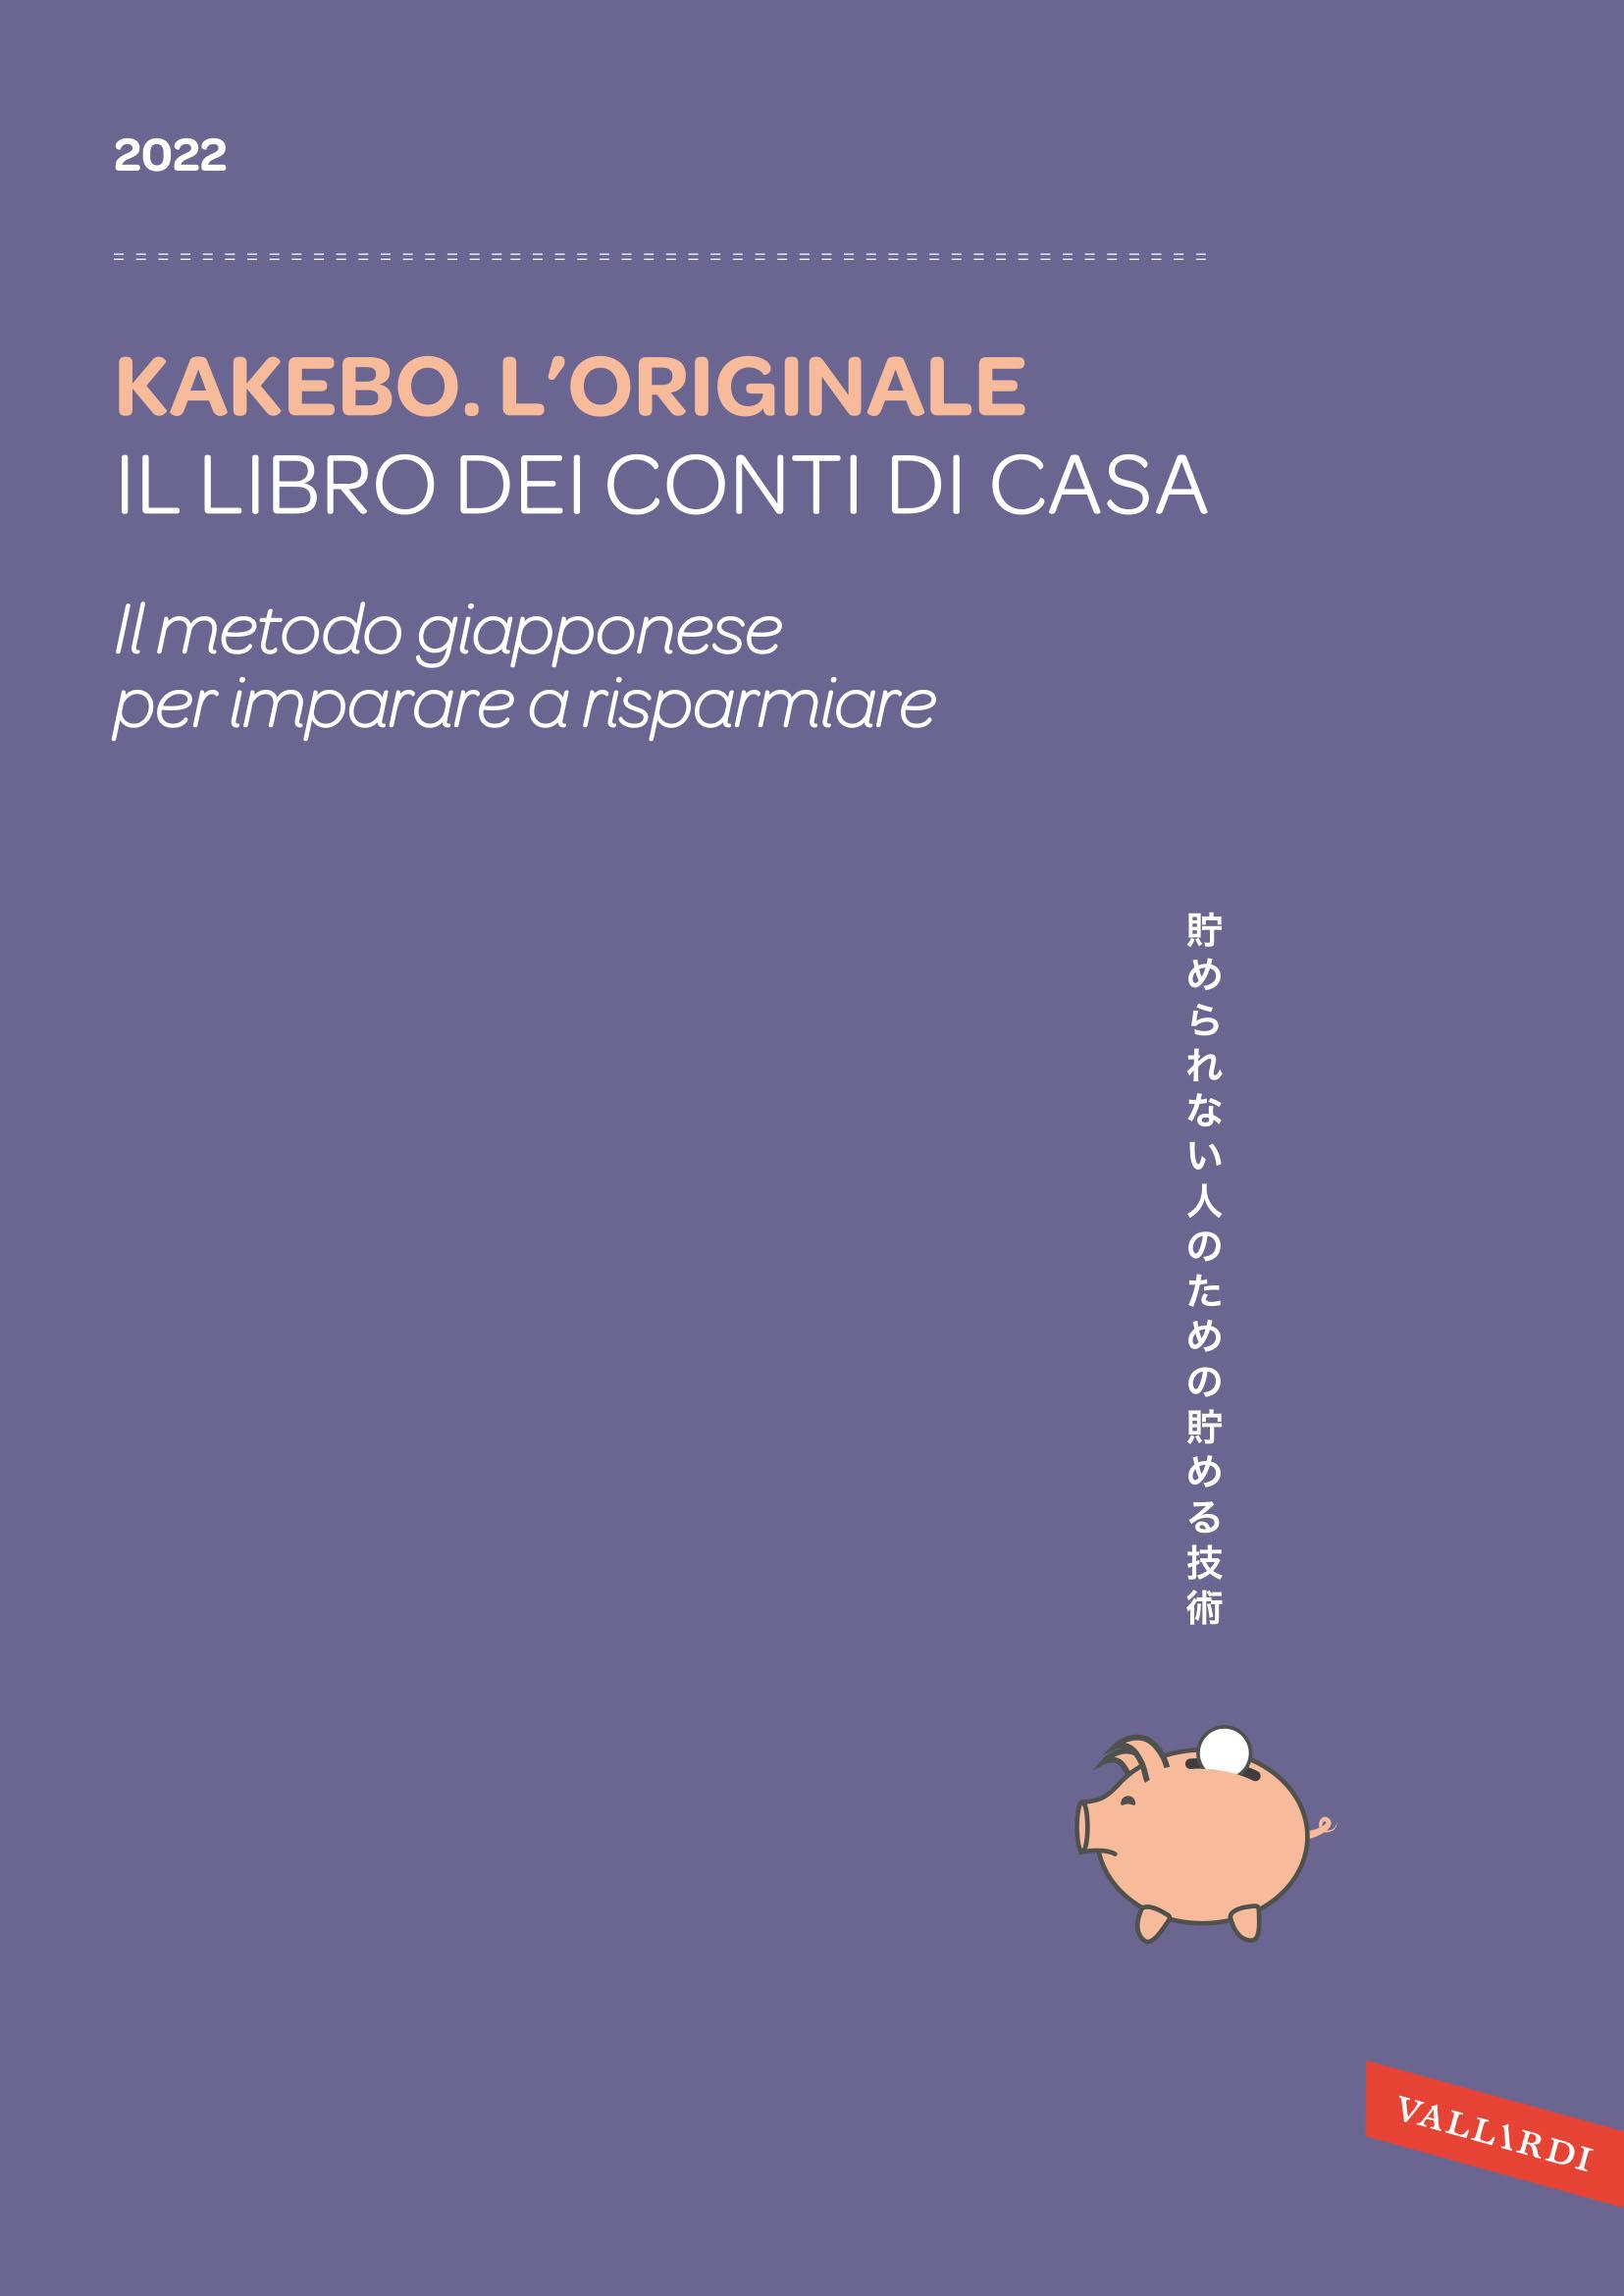 Image of Kakebo. L'originale 2022. Il libro dei conti di casa